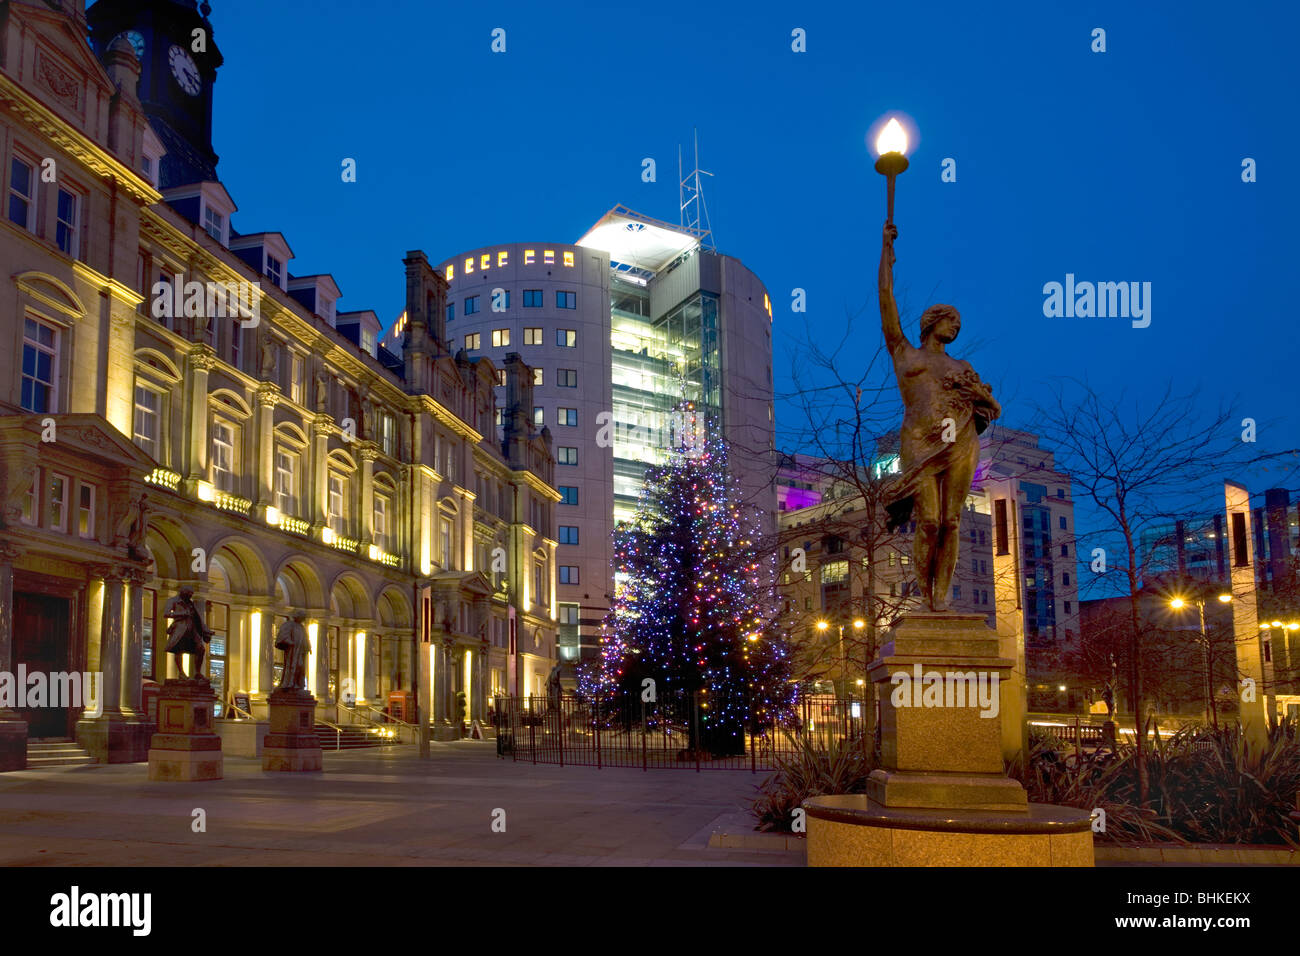 La Plaza de la ciudad de Leeds con árbol de navidad Foto de stock